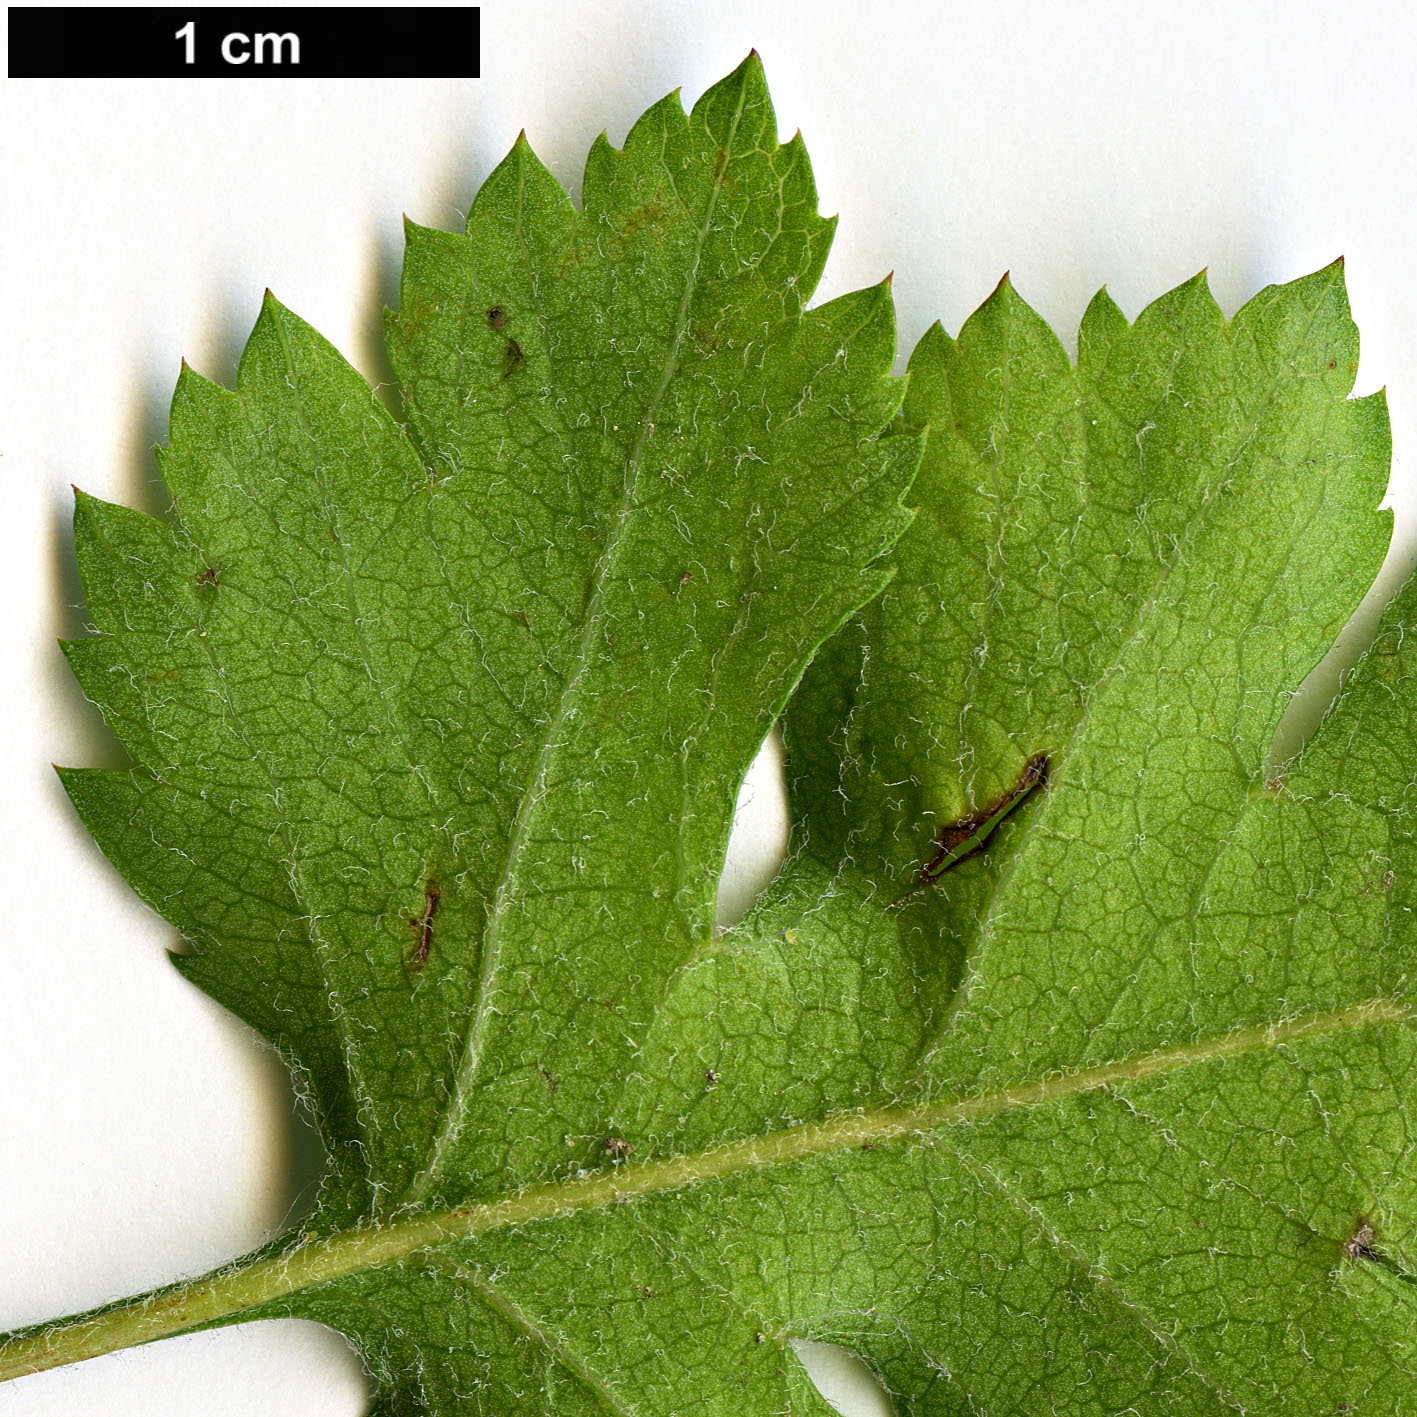 High resolution image: Family: Rosaceae - Genus: Crataegus - Taxon: marshallii